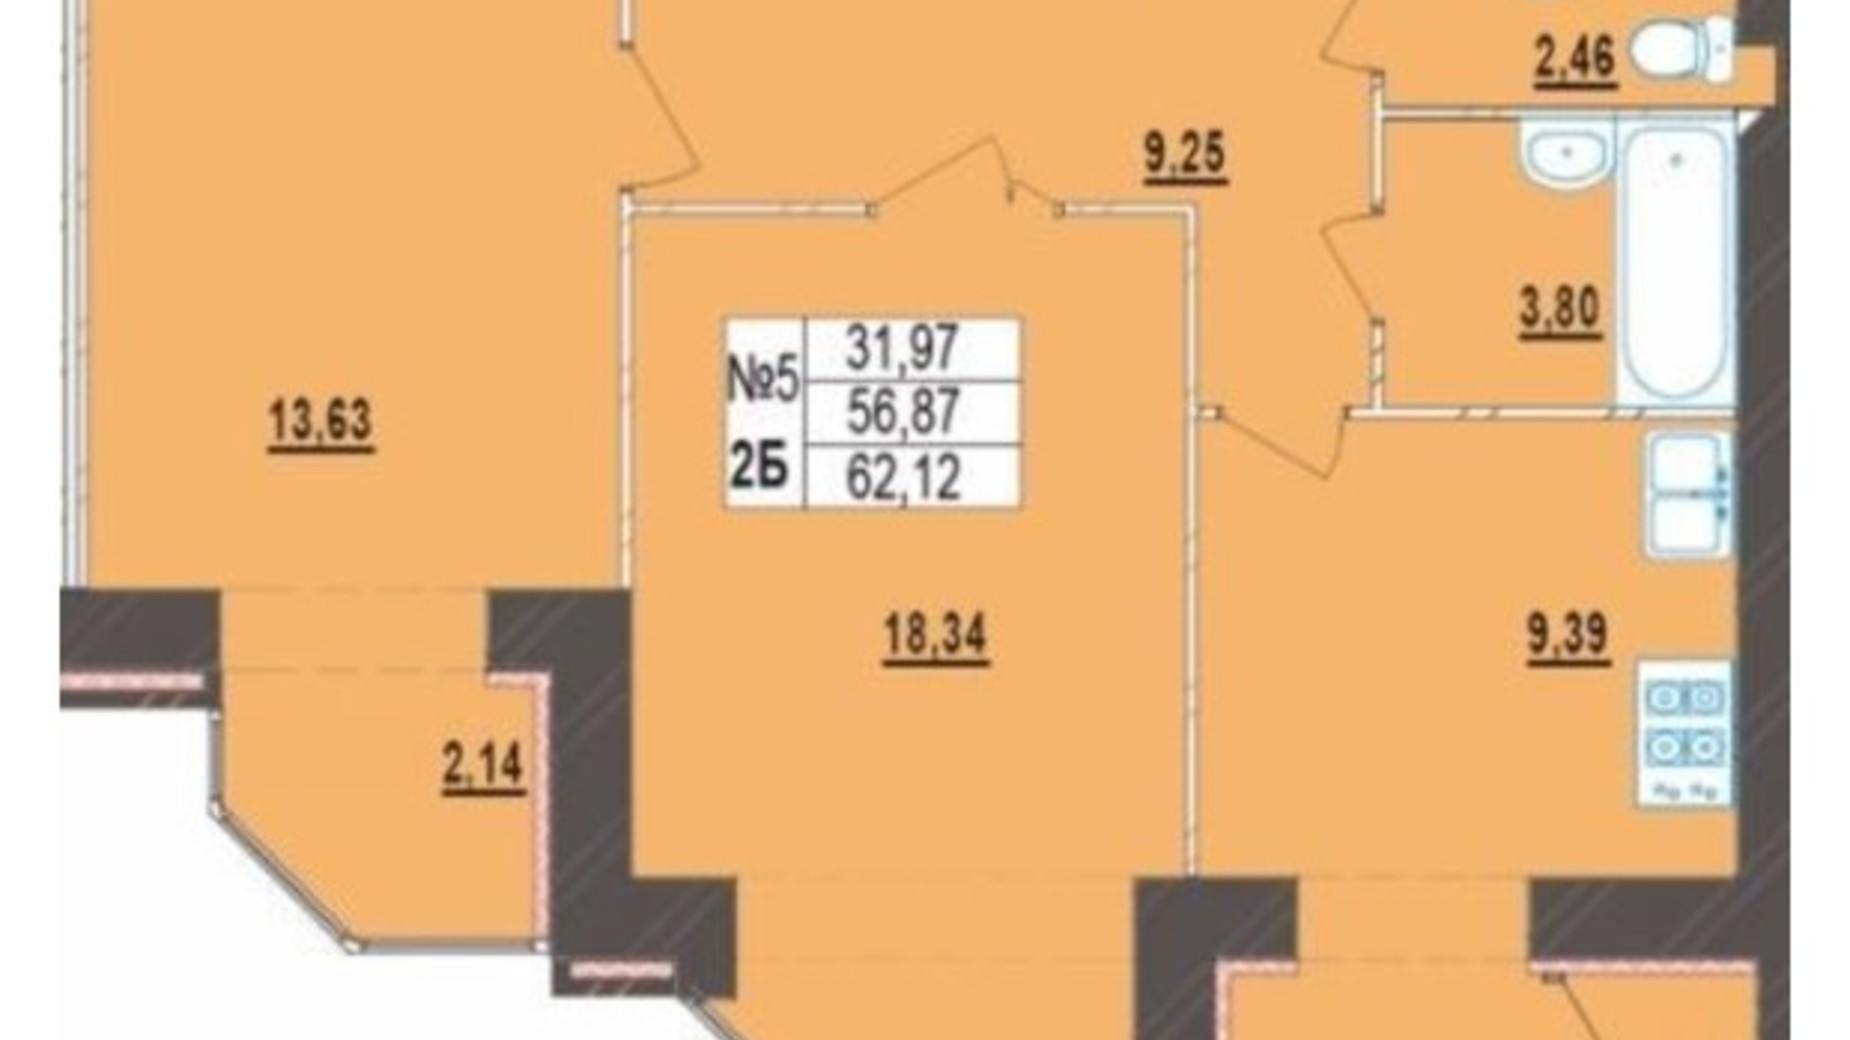 Планировка 2-комнатной квартиры в ЖК Левада Новая 62.12 м², фото 389898